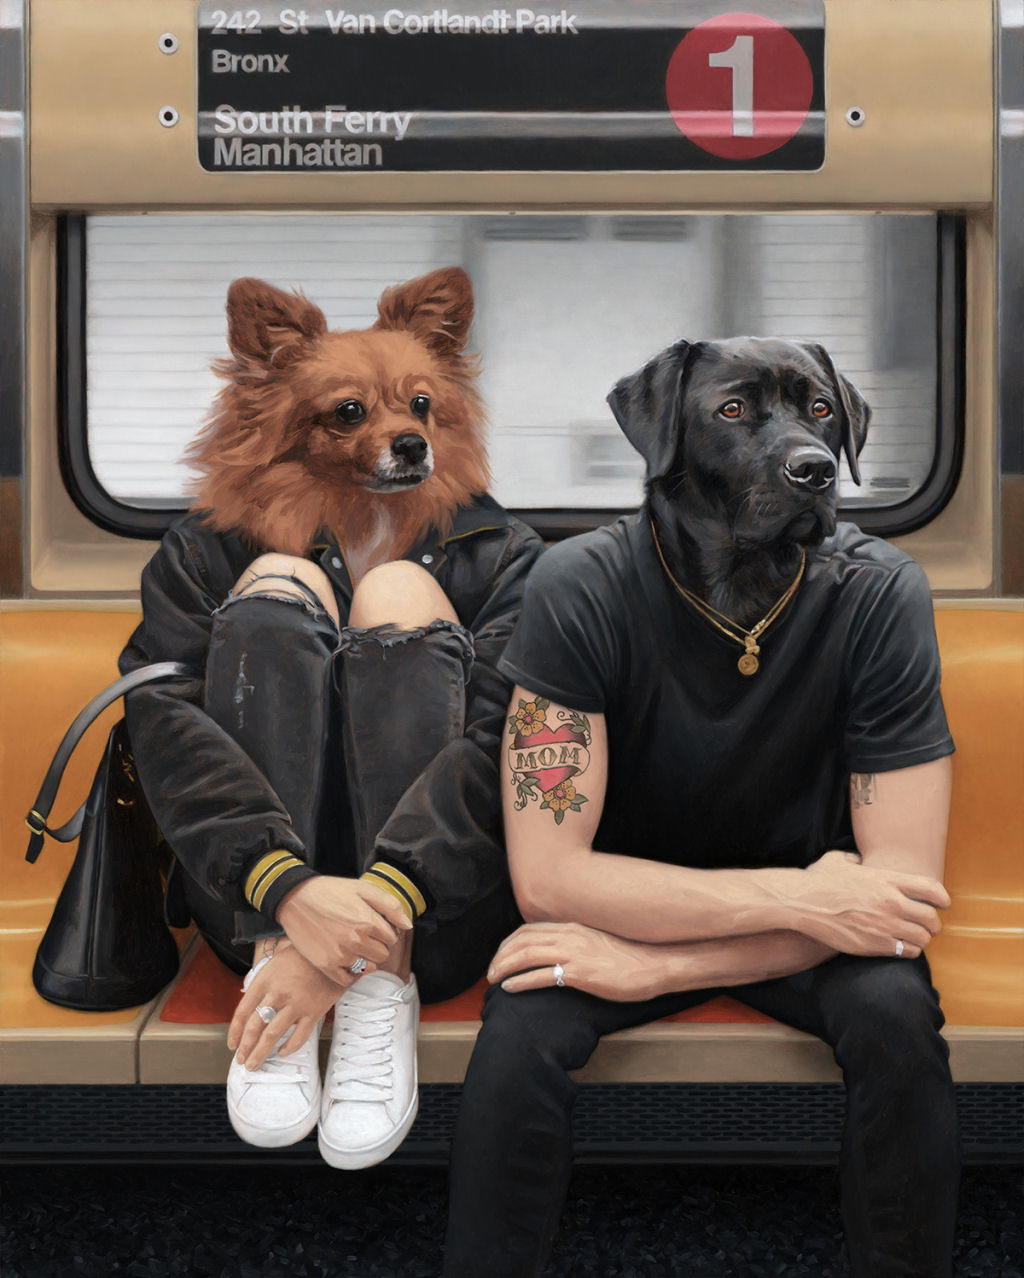 Estas pinturas surreais mostram 'viagens animais' pelo metr de Nova York 12